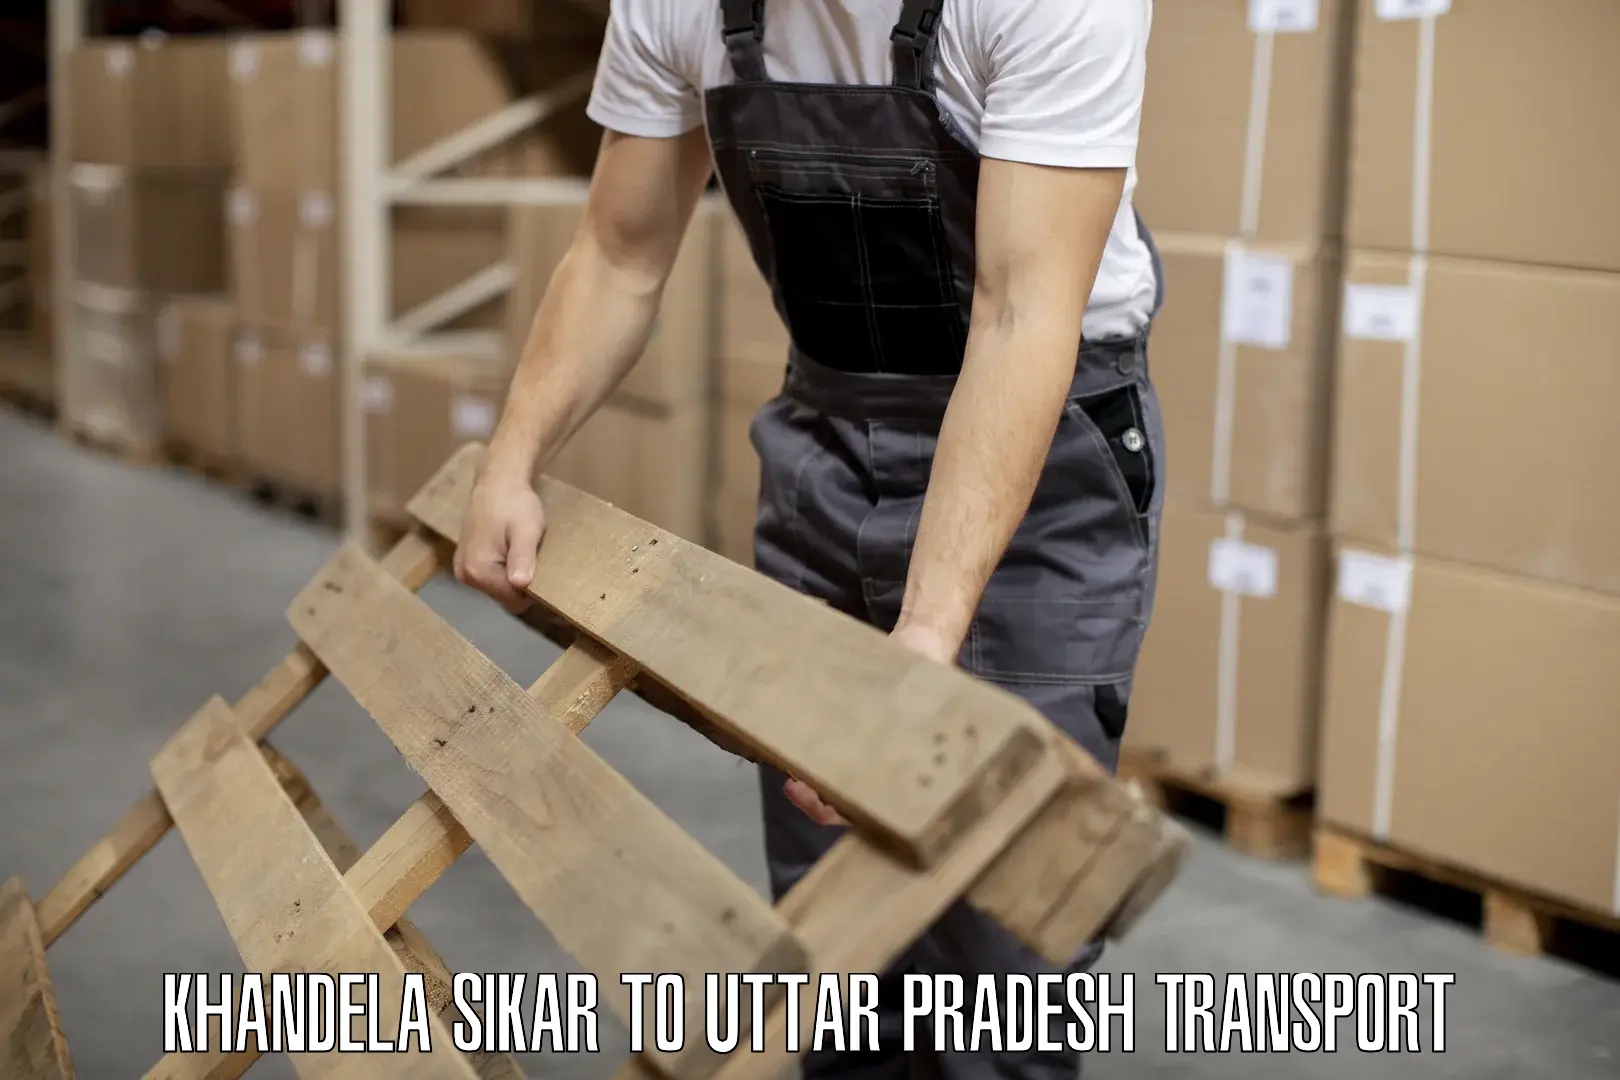 Part load transport service in India Khandela Sikar to Vrindavan